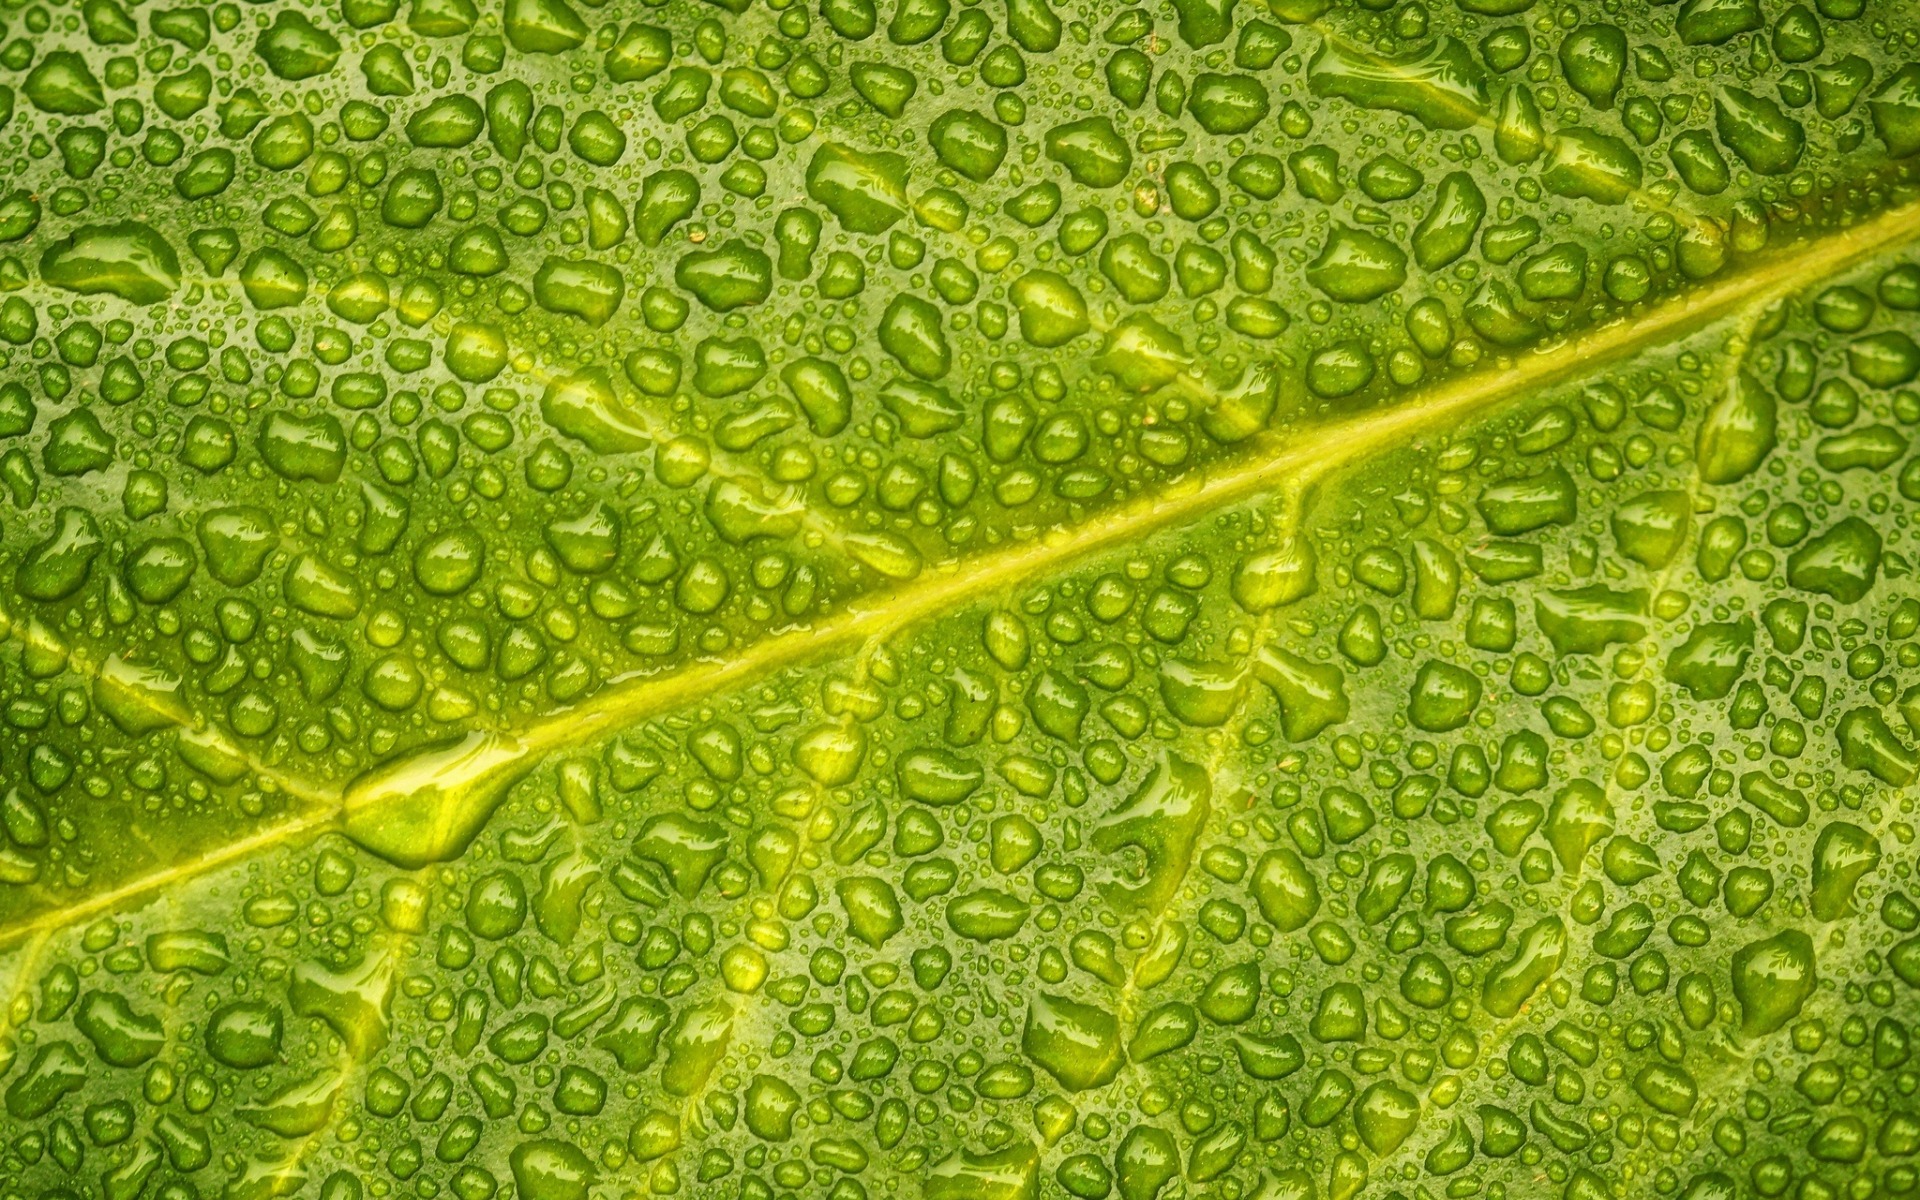 Download wallpapers green leaf, water droplets, wet leaf, leaf ...